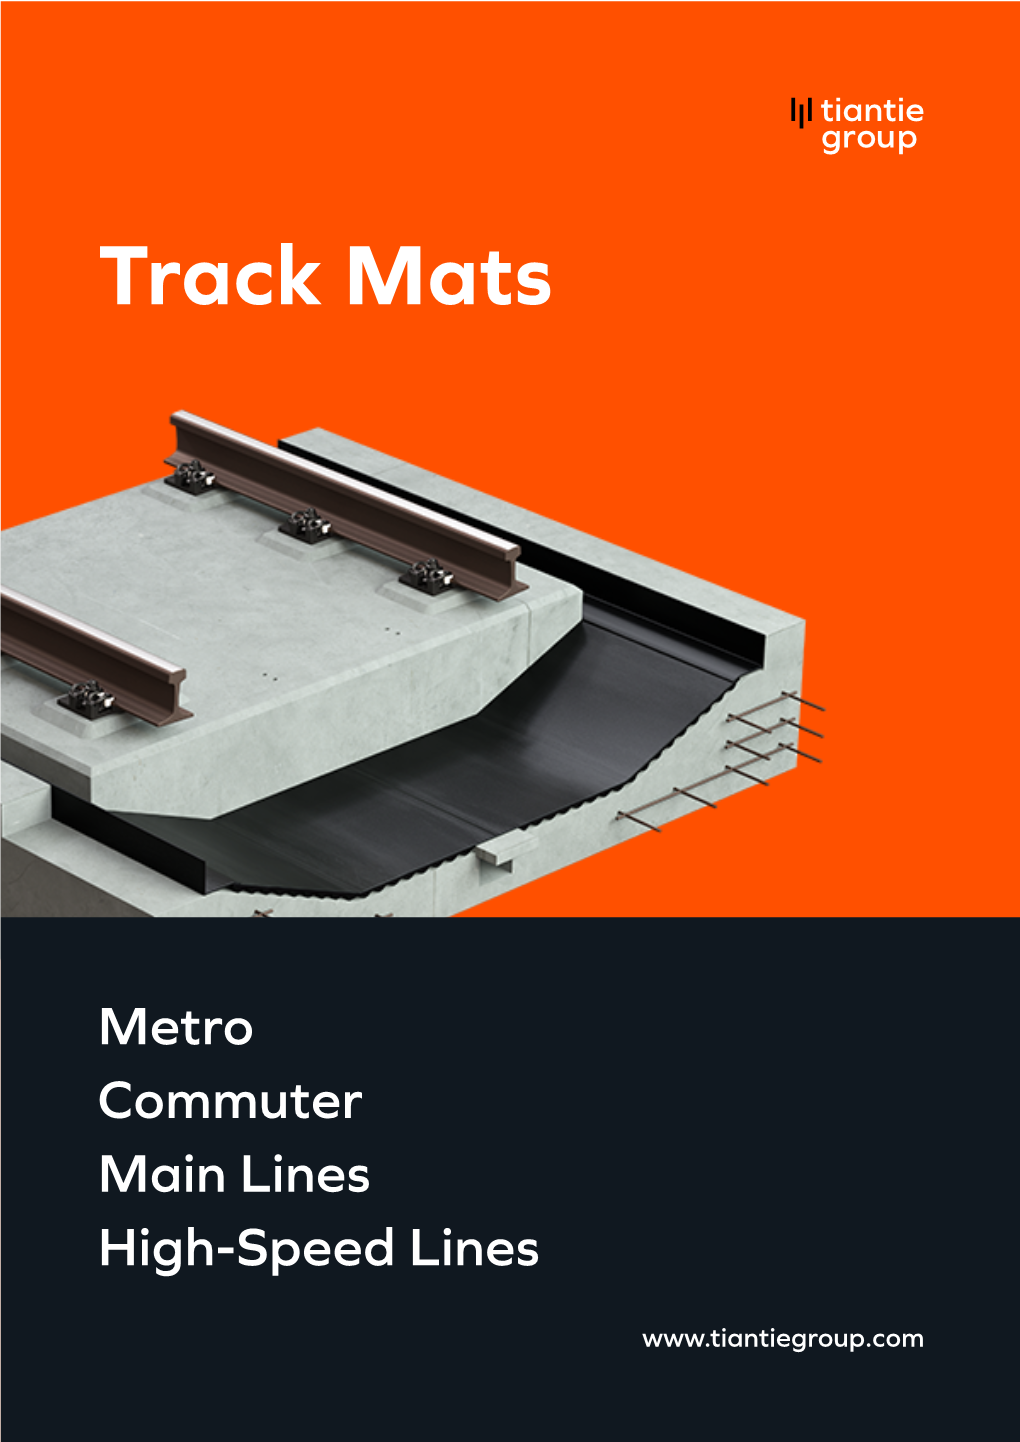 Track Mats Brochure